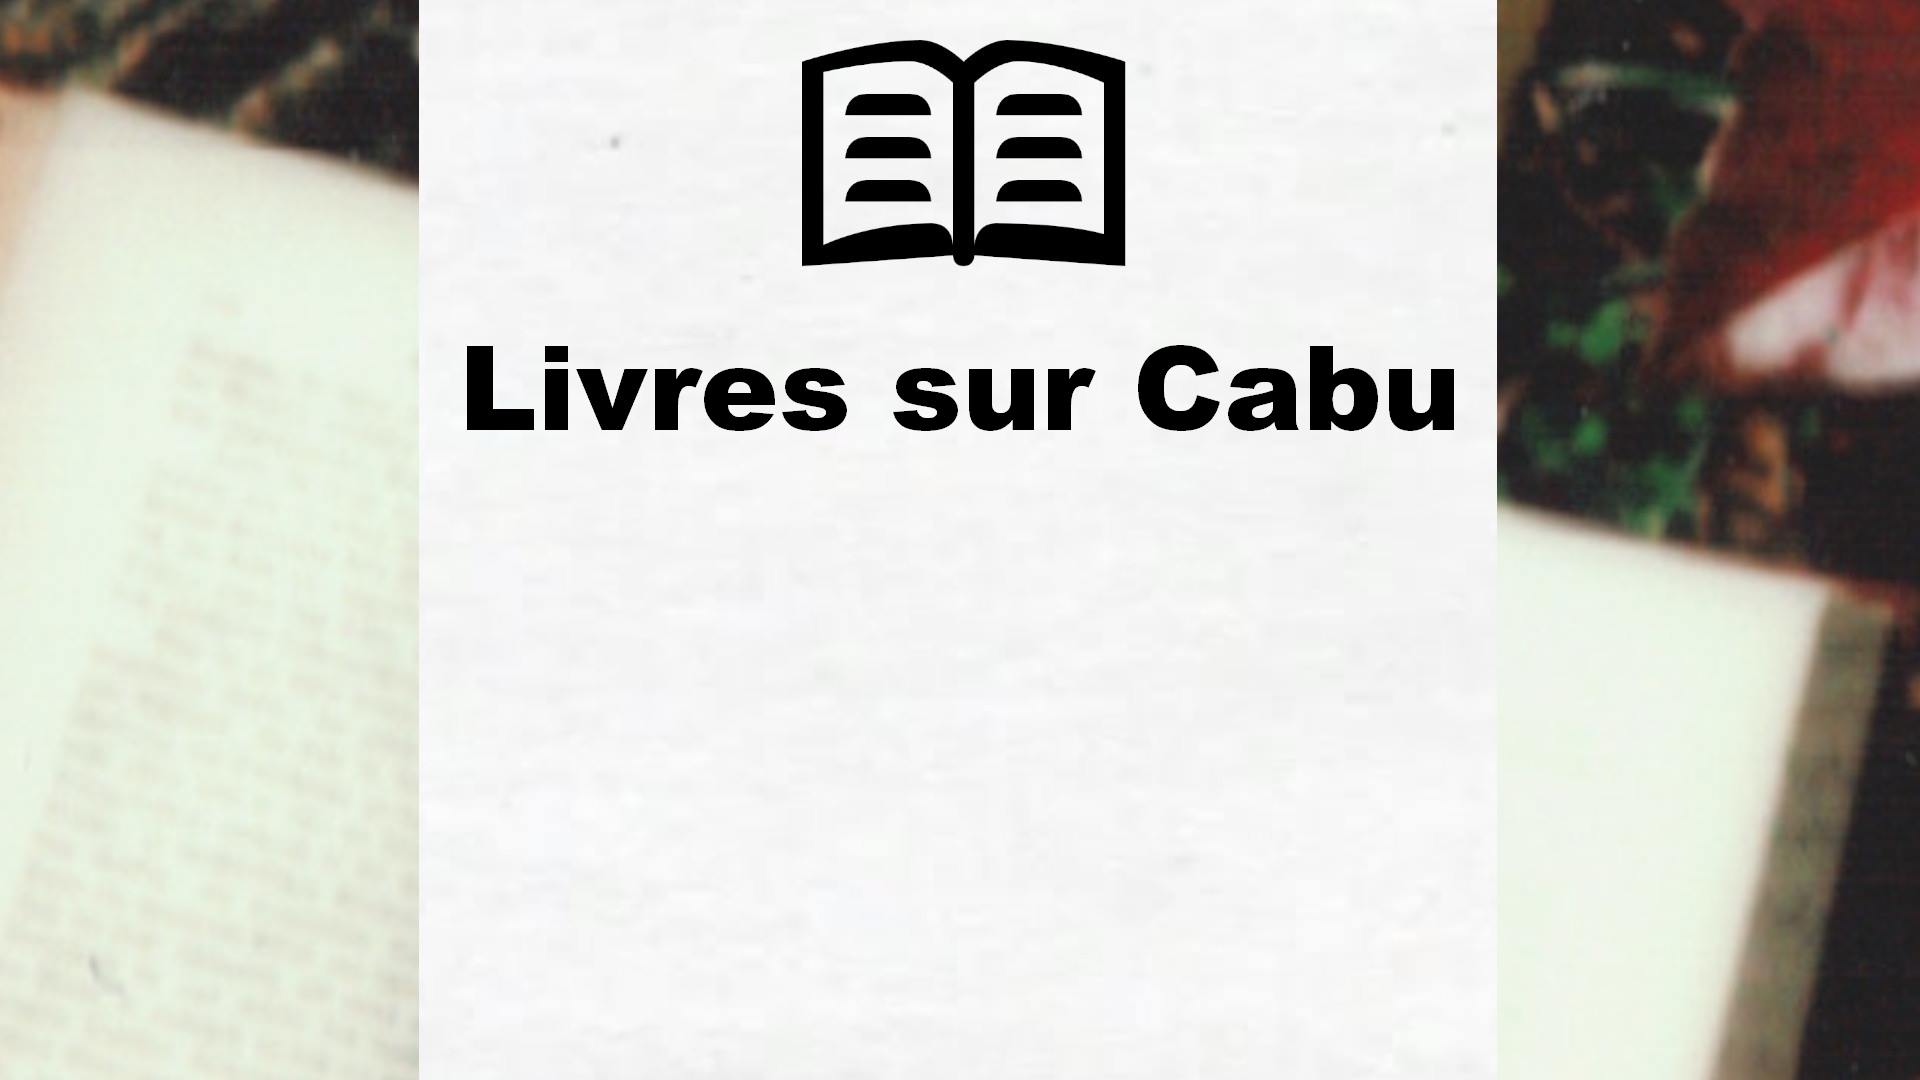 Livres sur Cabu